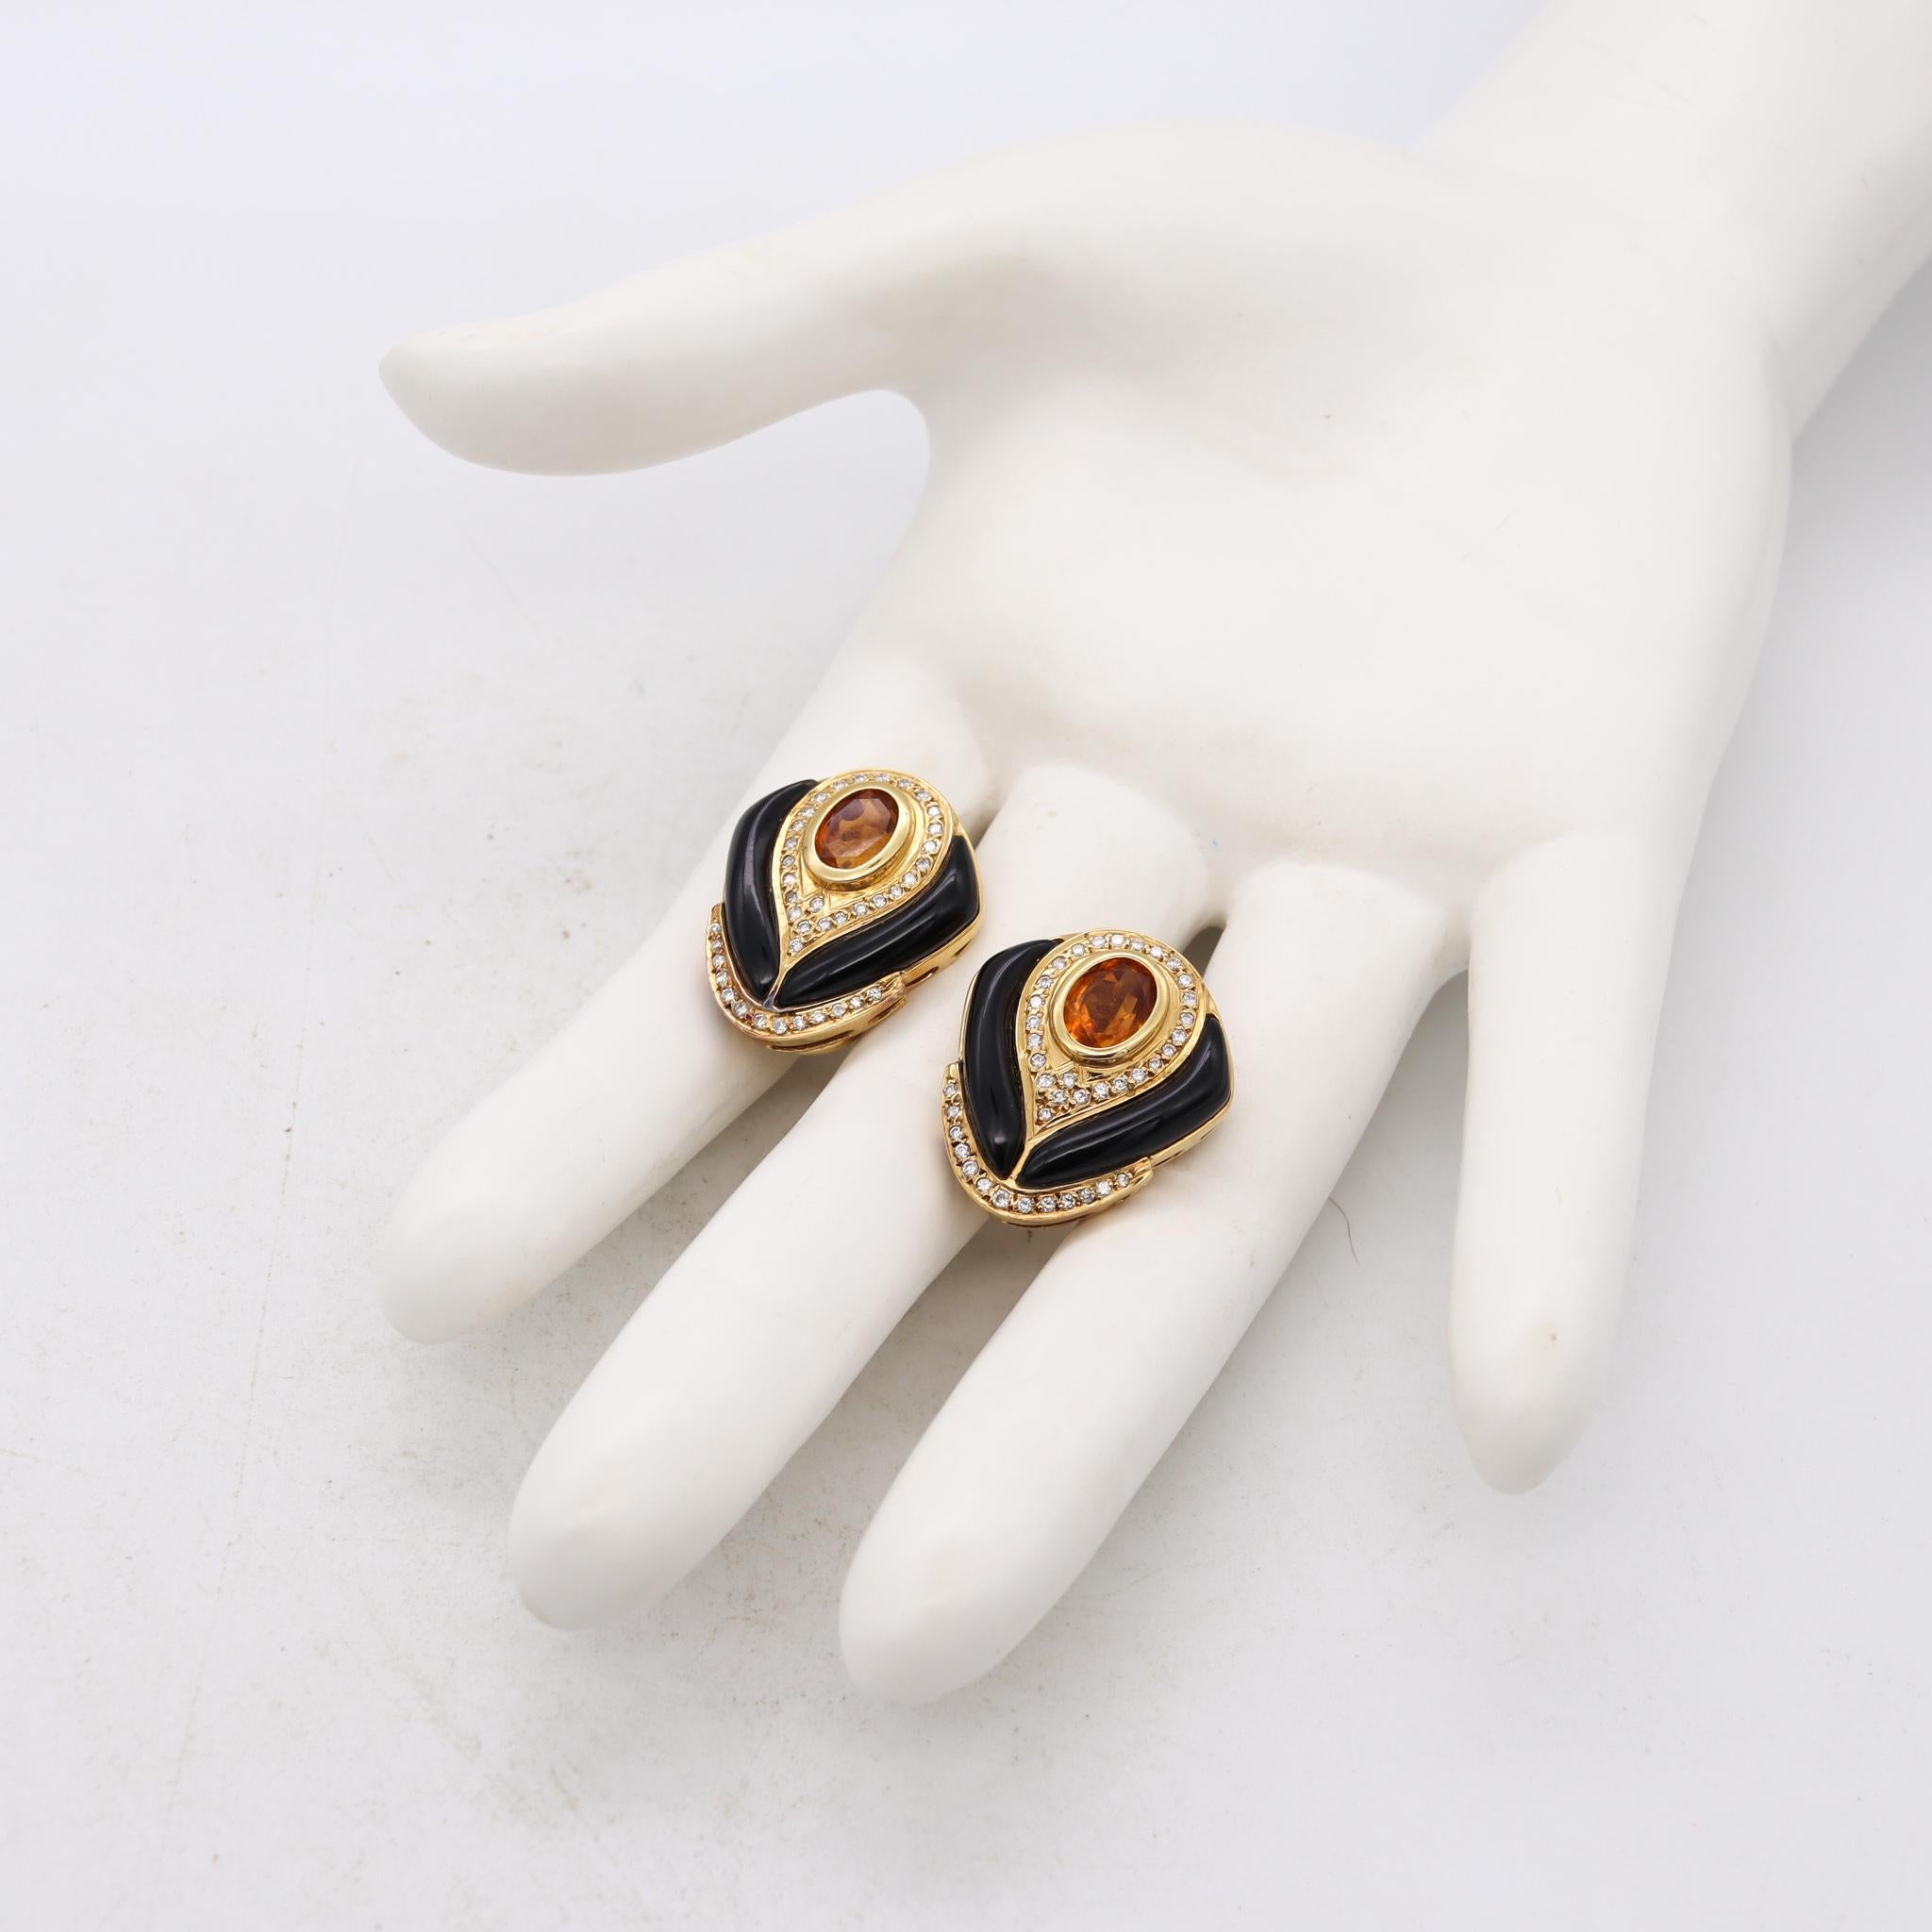 Modernist Modern Italian Designer Gem Set Earrings 18Kt Gold 4.56 Ct Diamond And Gemstones